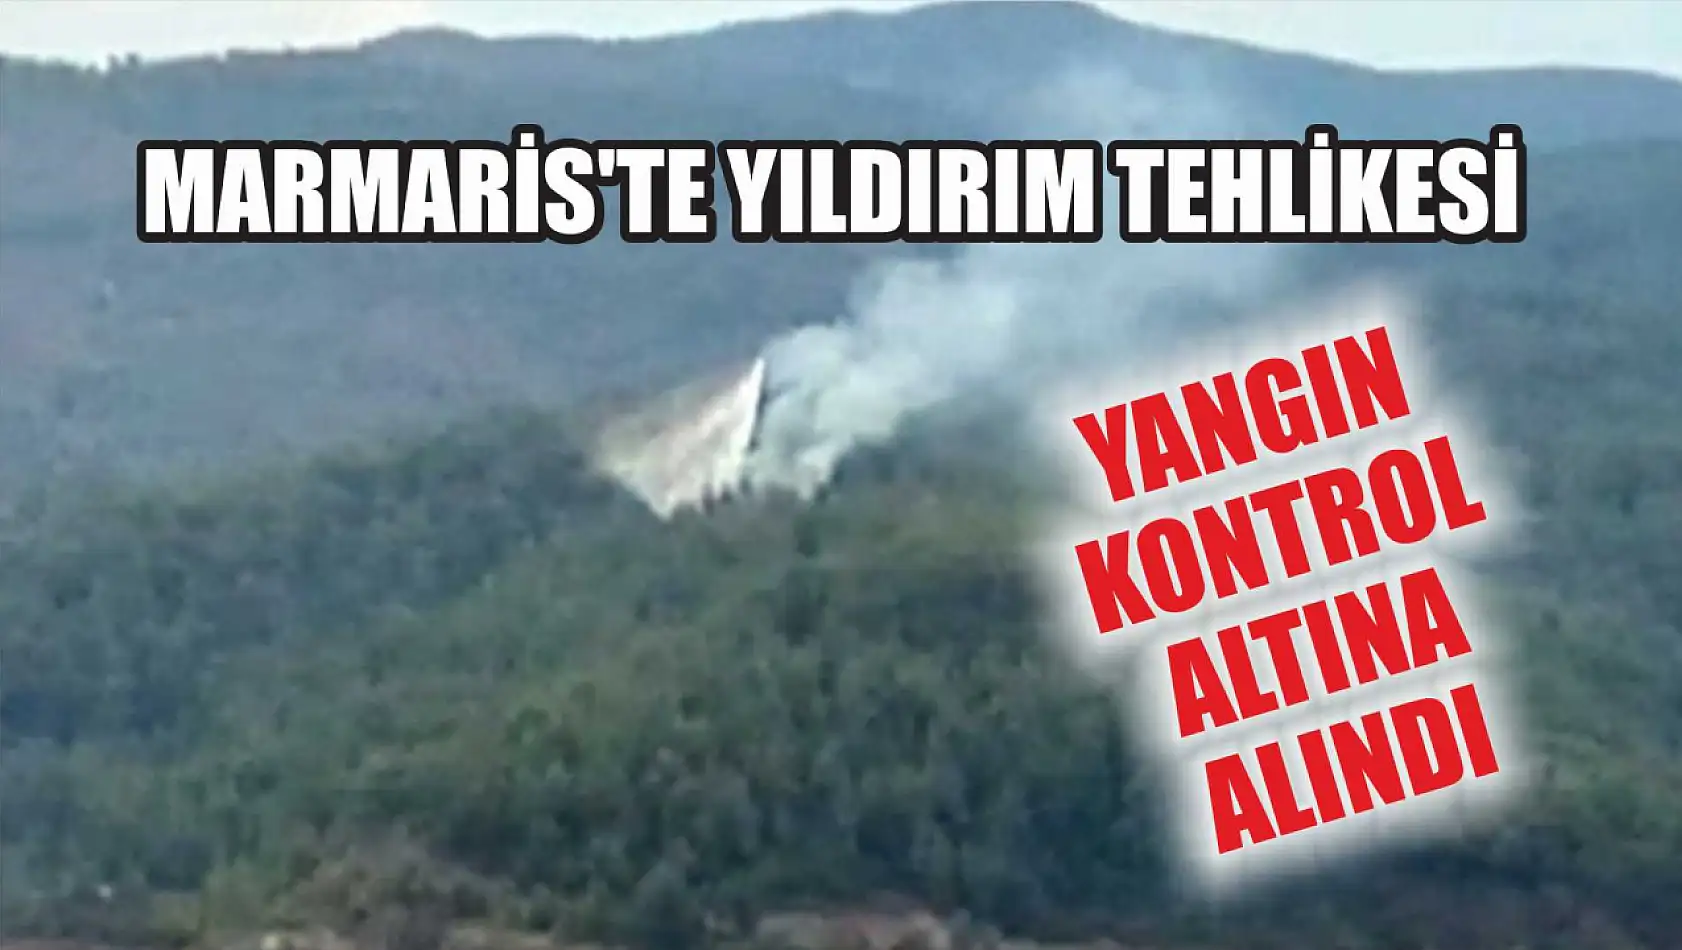 Marmaris'te Yıldırım Tehlikesi: Yangın Kontrol Altına Alındı